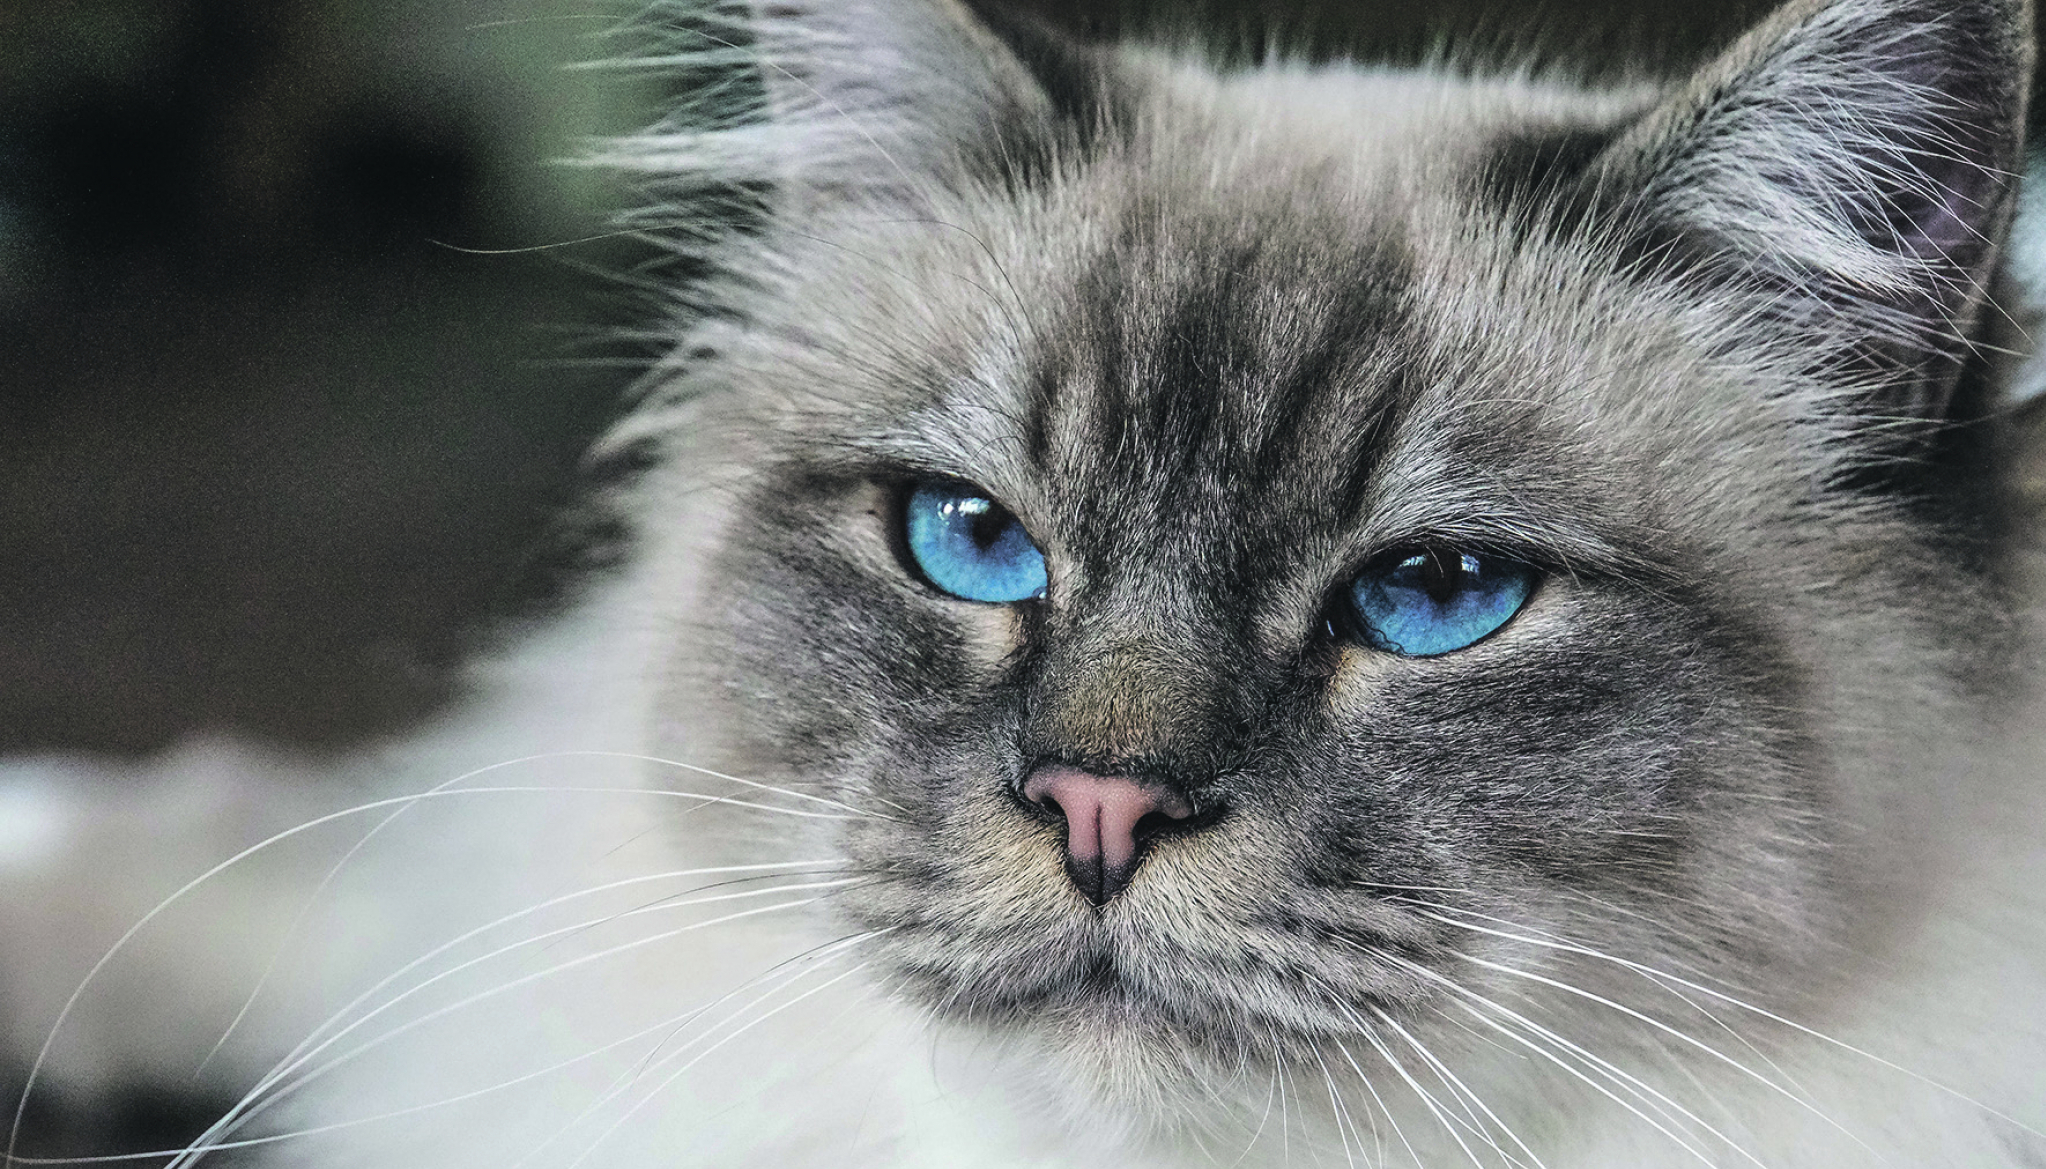 OTMENA GRACIOZA Neobična priča birmanske mačke, najljupkije rase na svetu